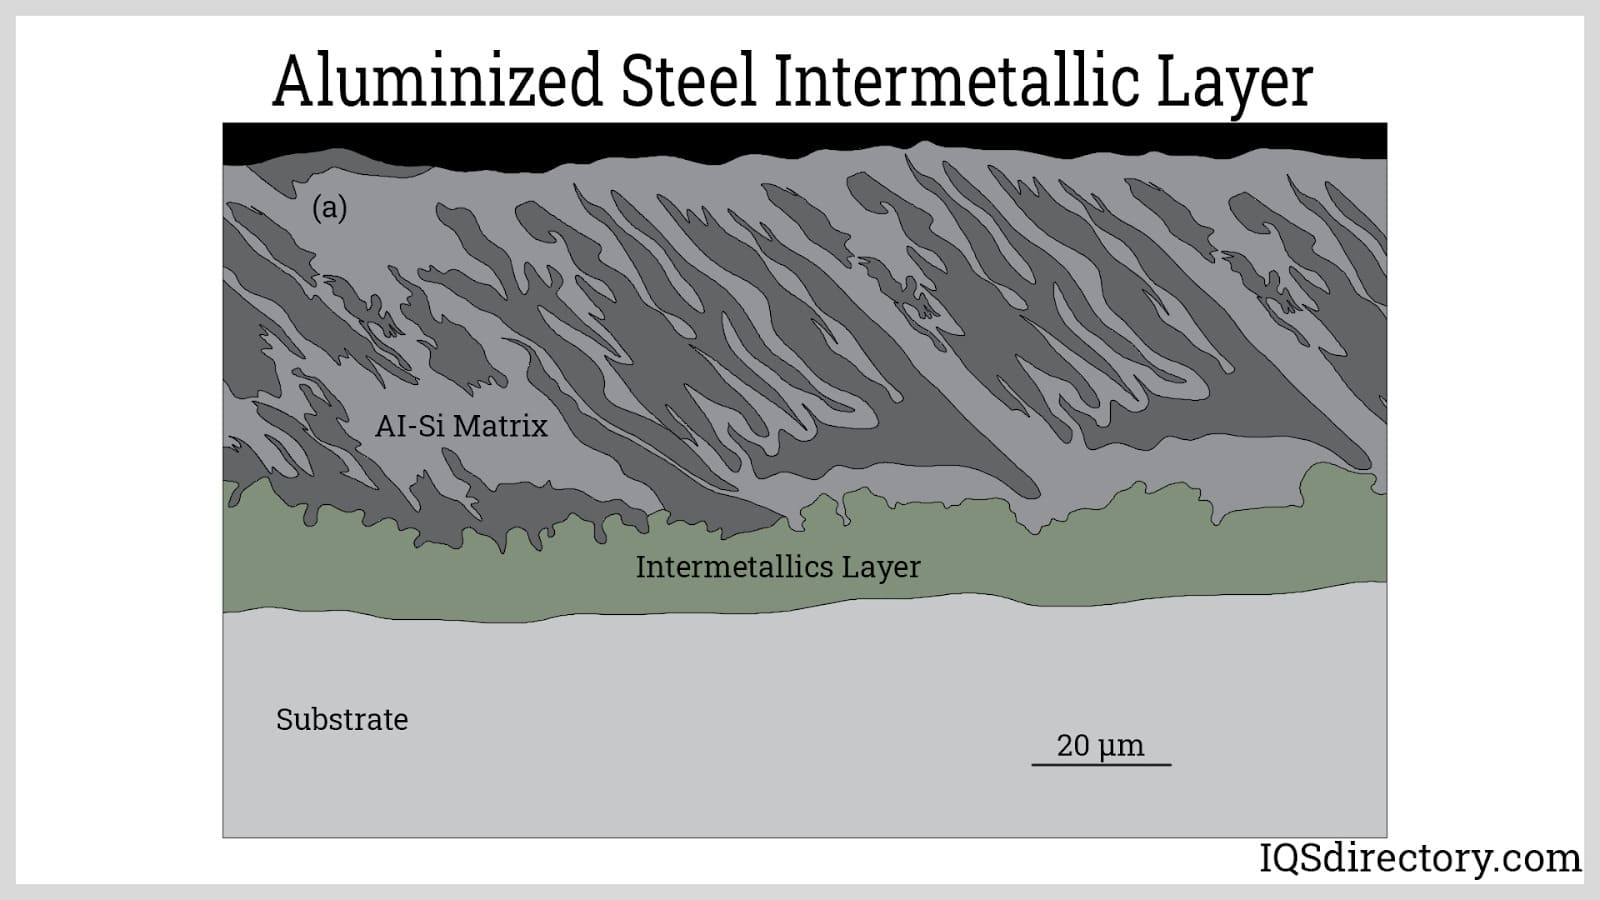 Aluminized Steel Intermetallic Layer